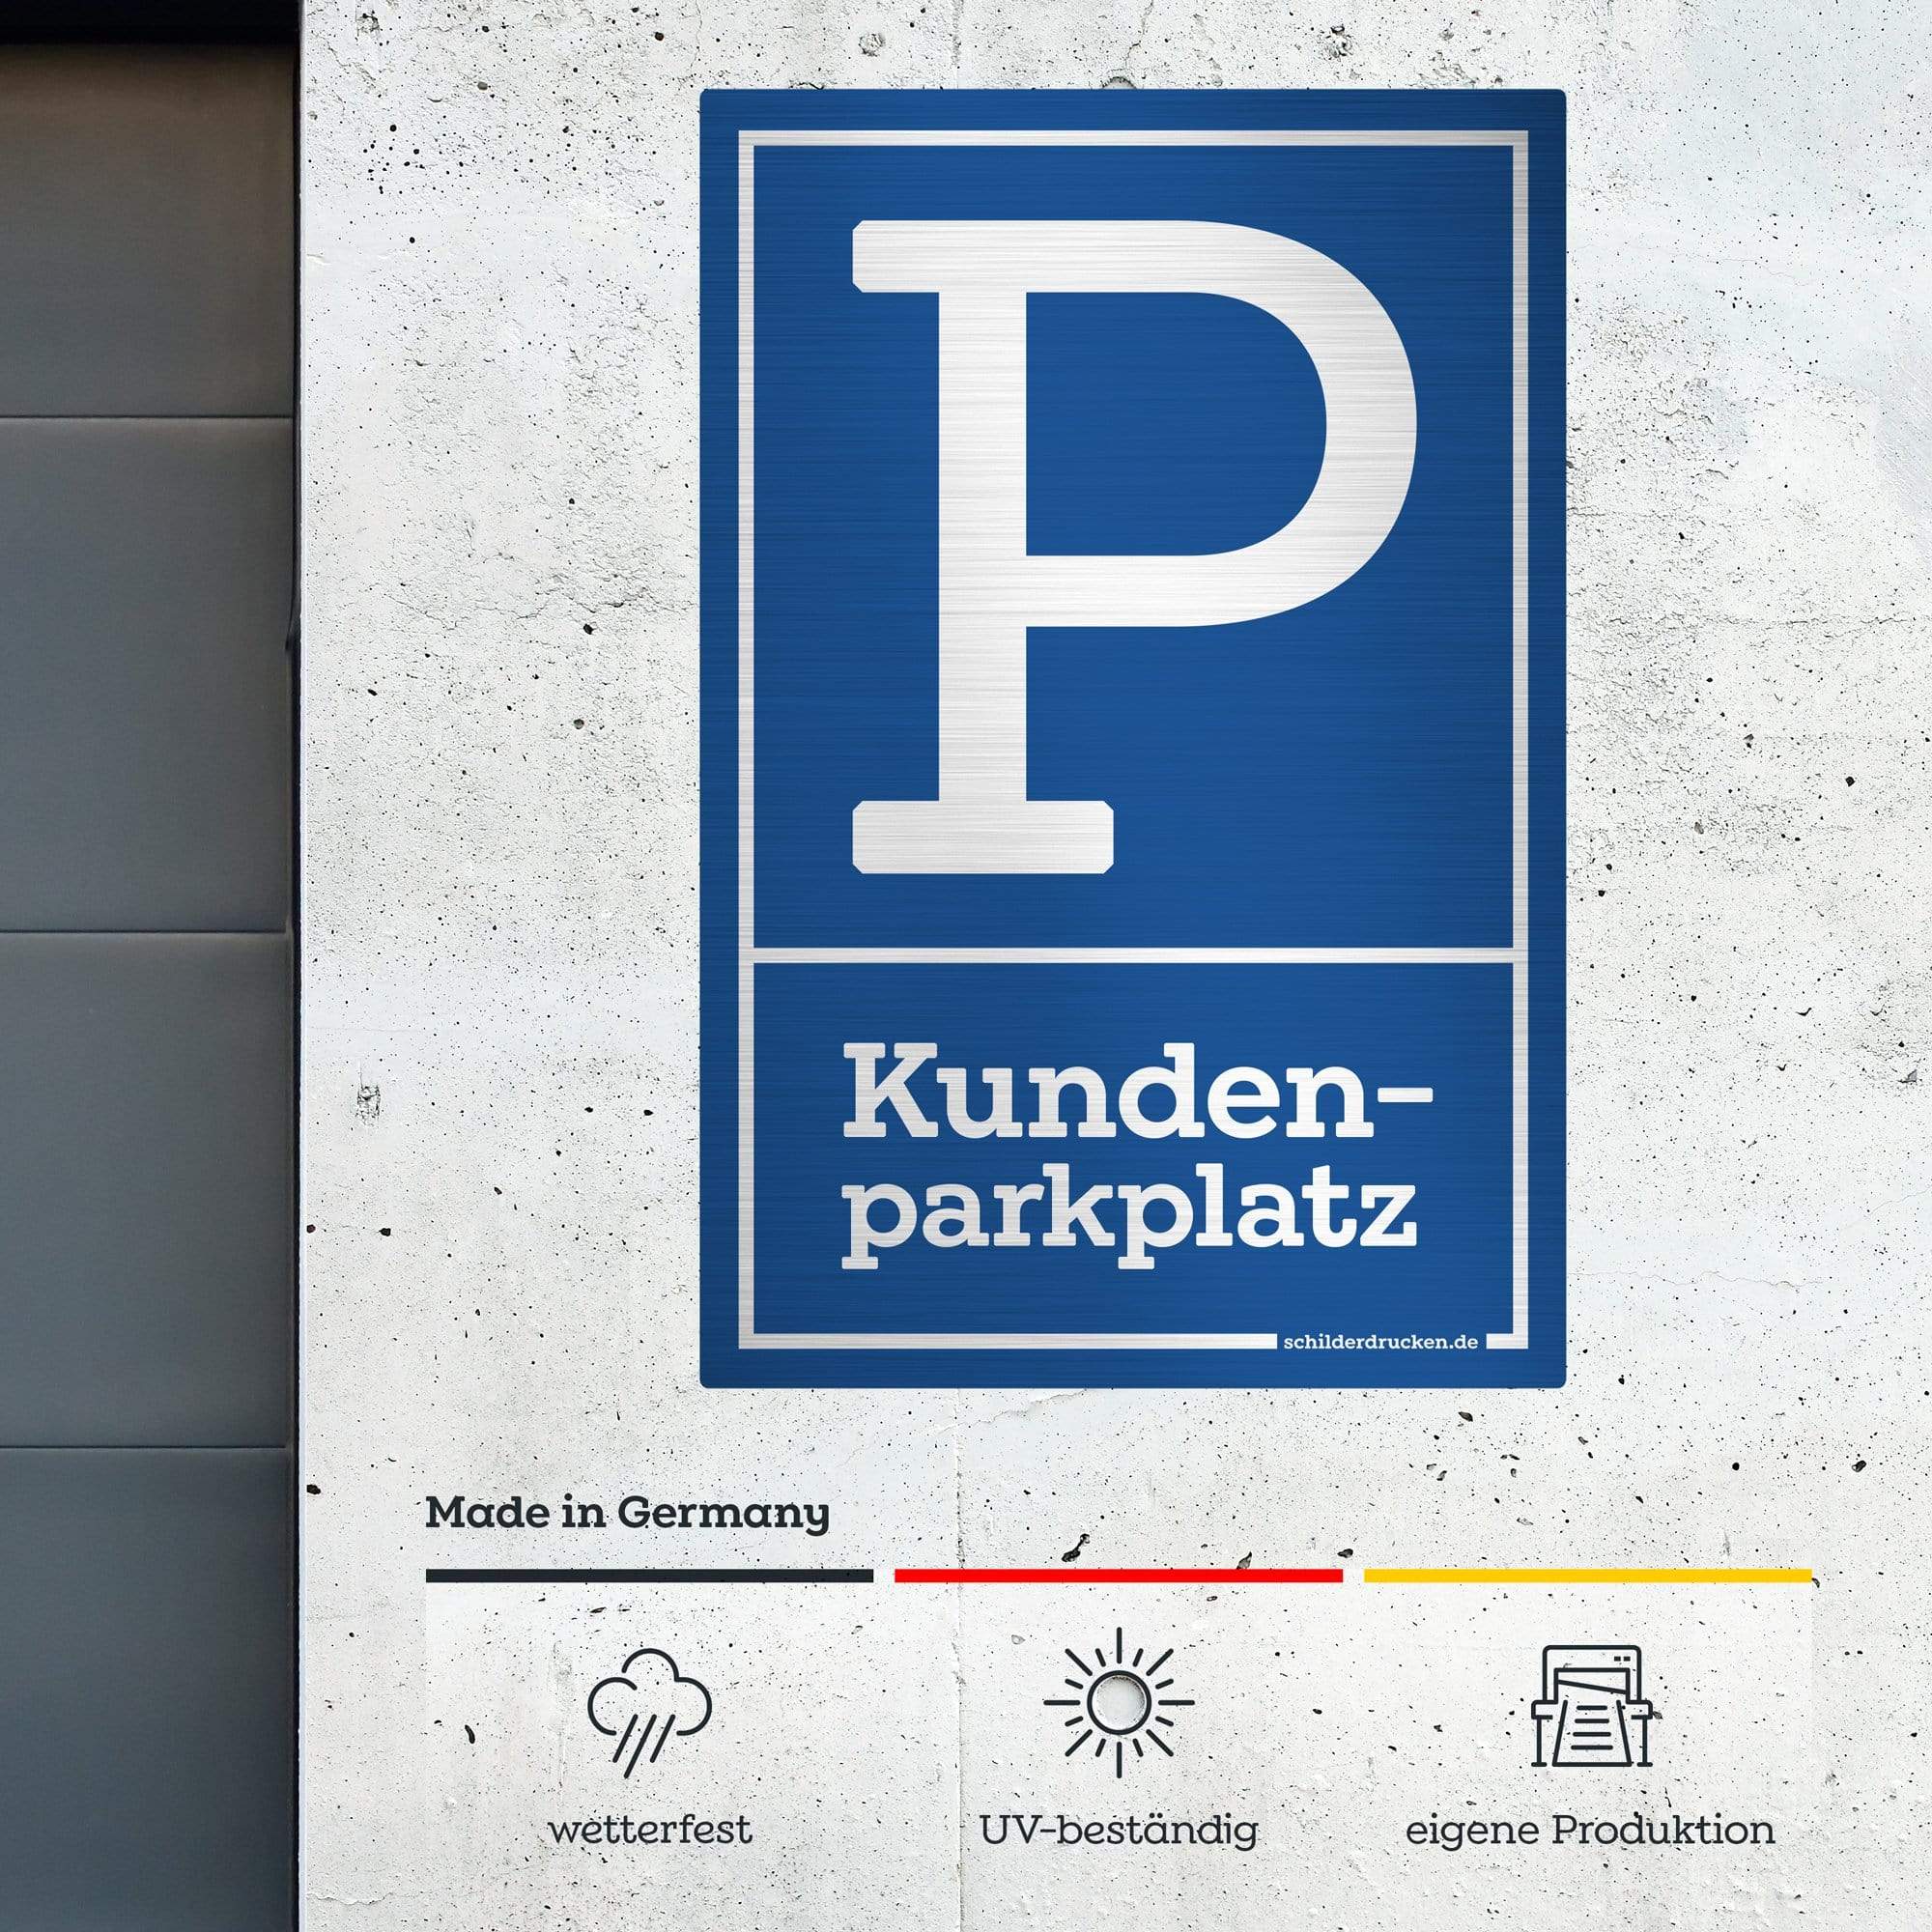 Kundenparkplatz 10 x 15 cm / silber gebürstet / Alu-Dibond online drucken lassen bei schilderdrucken.de